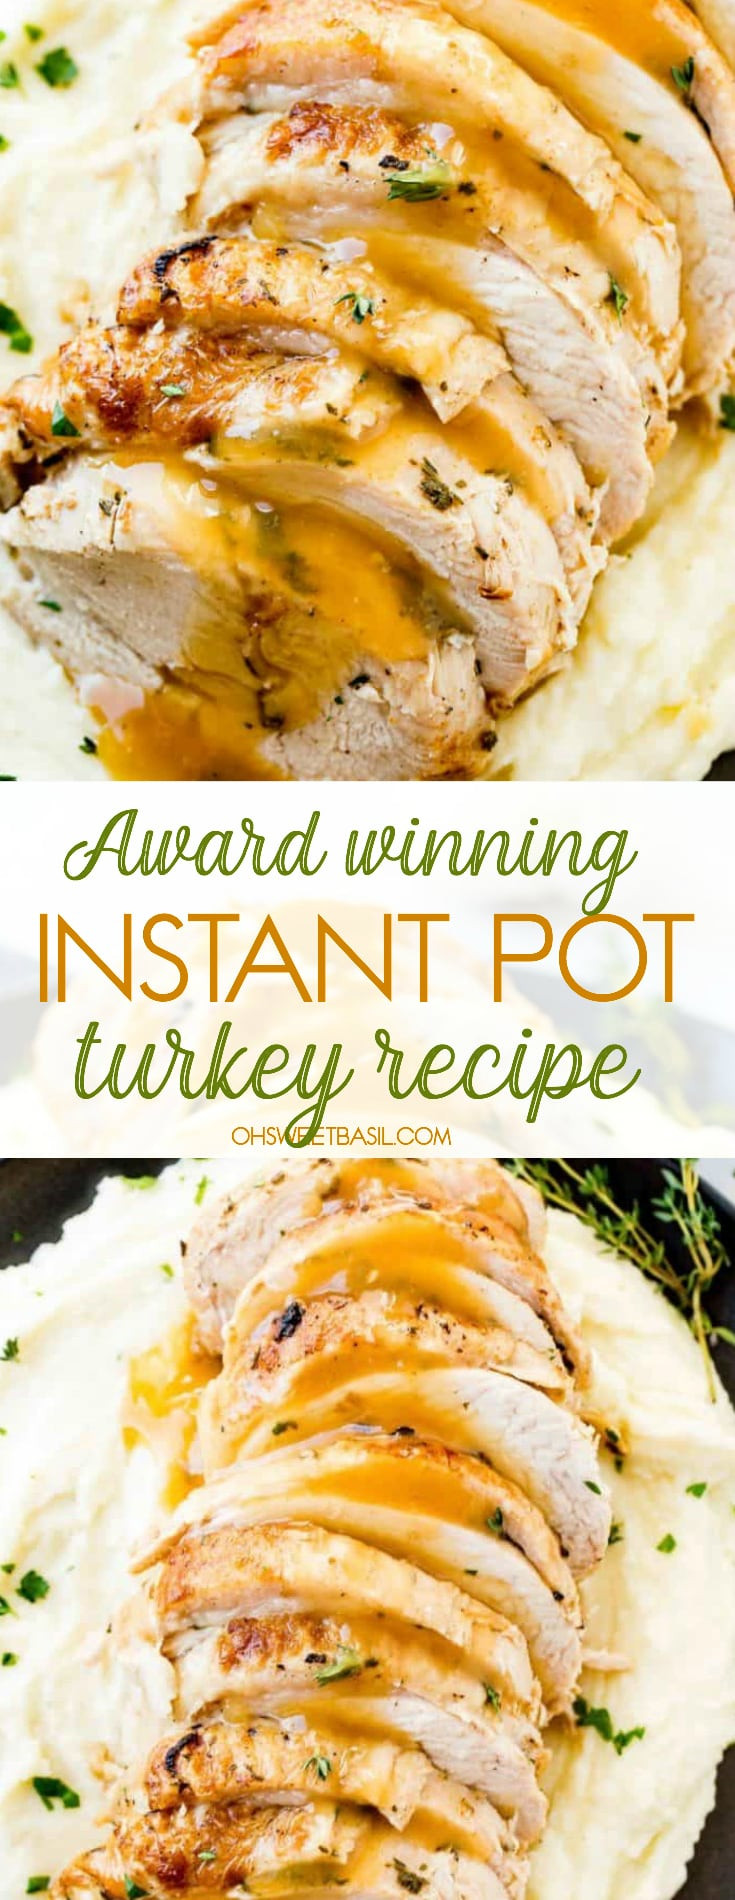 Instant Pot Thanksgiving Recipes
 Award Winning Instant Pot Turkey Recipe [ Video] Oh